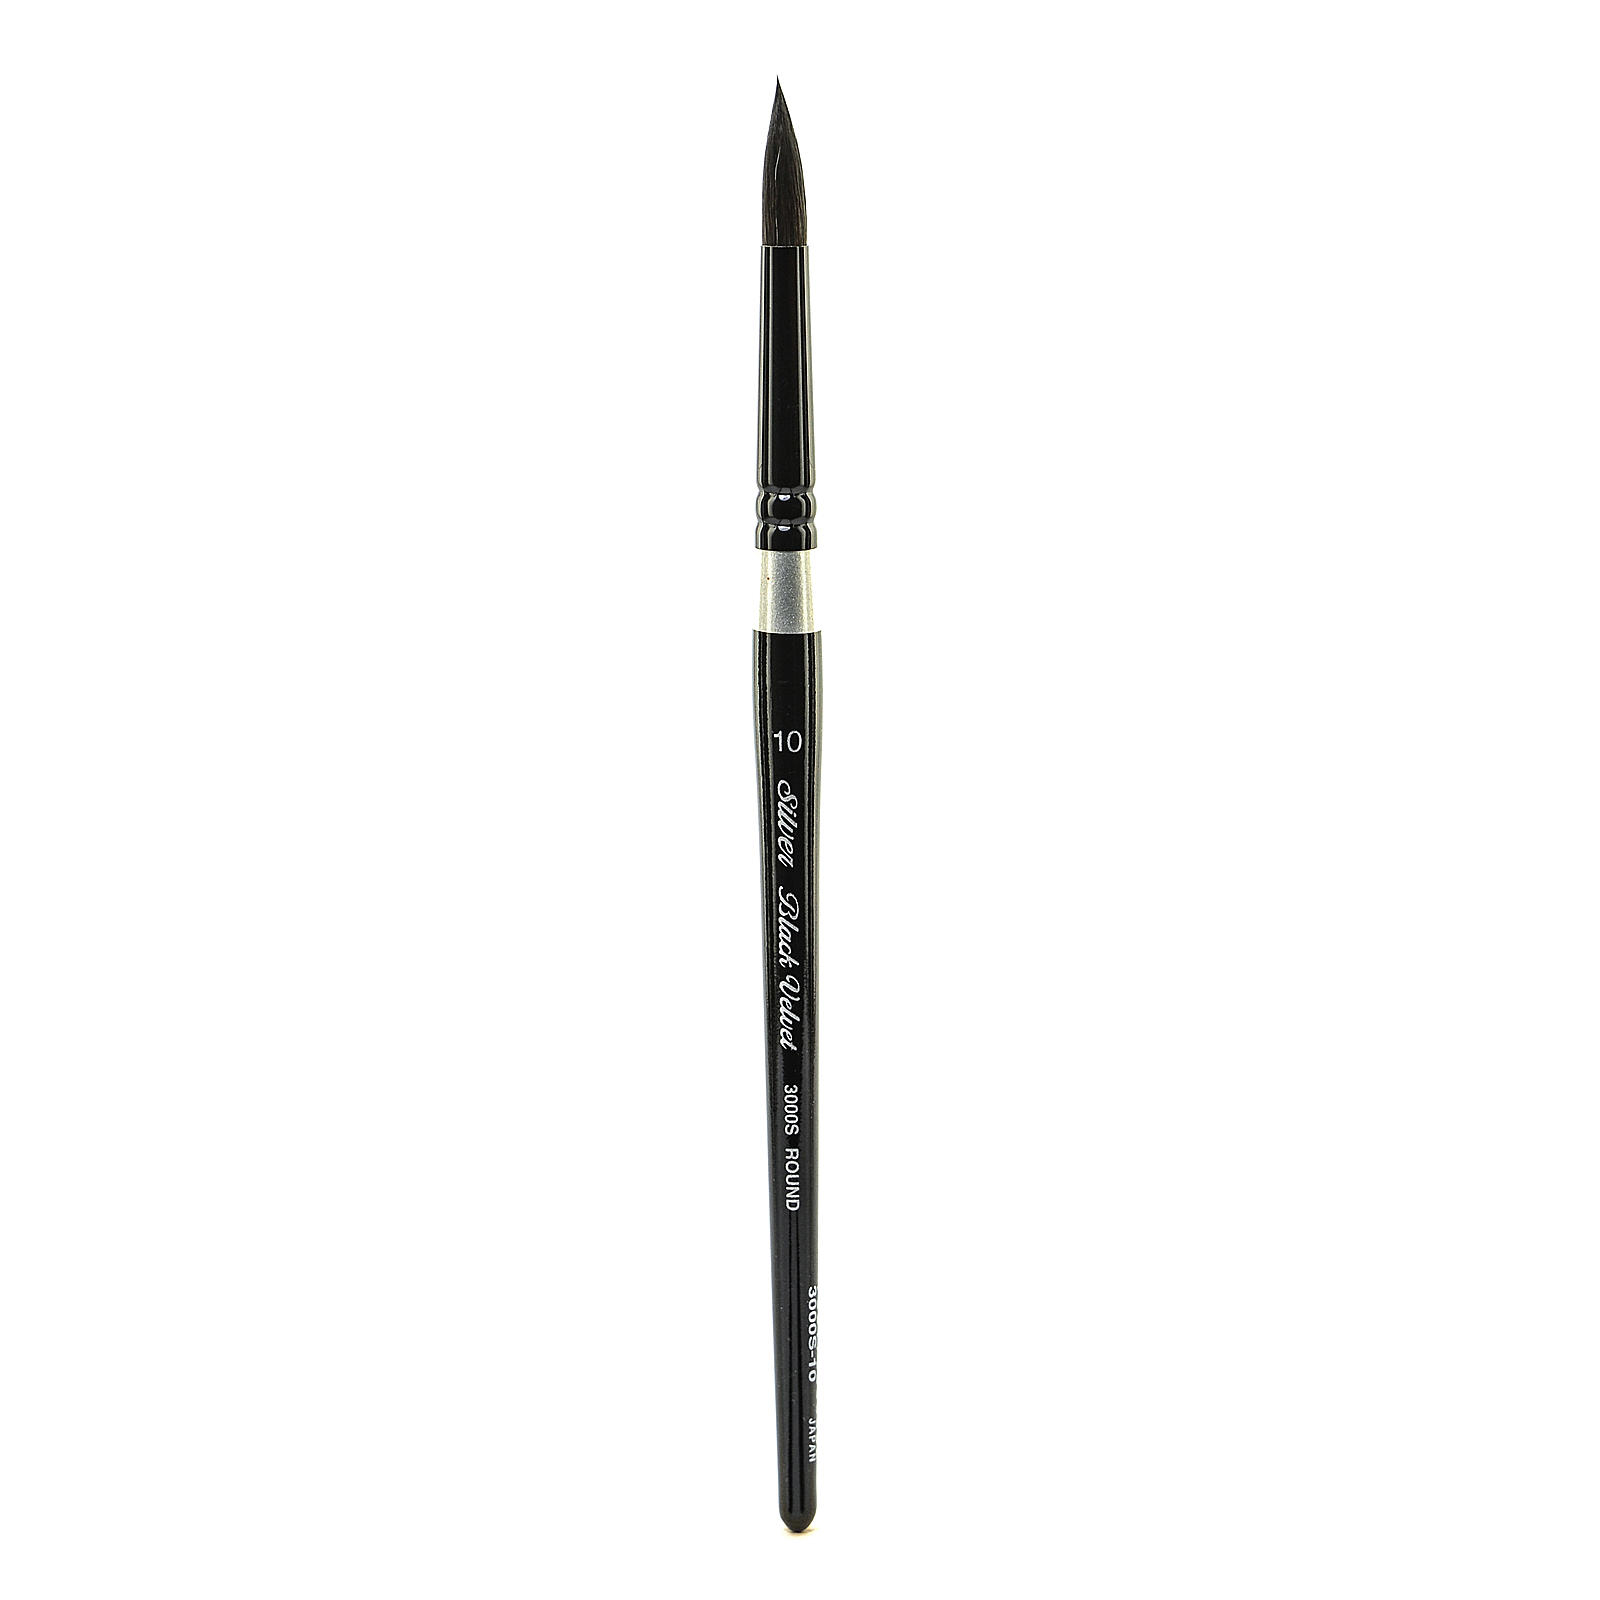 Silver Brush Limited 3000S-10 Velvet Paint Brush – Black and Silver